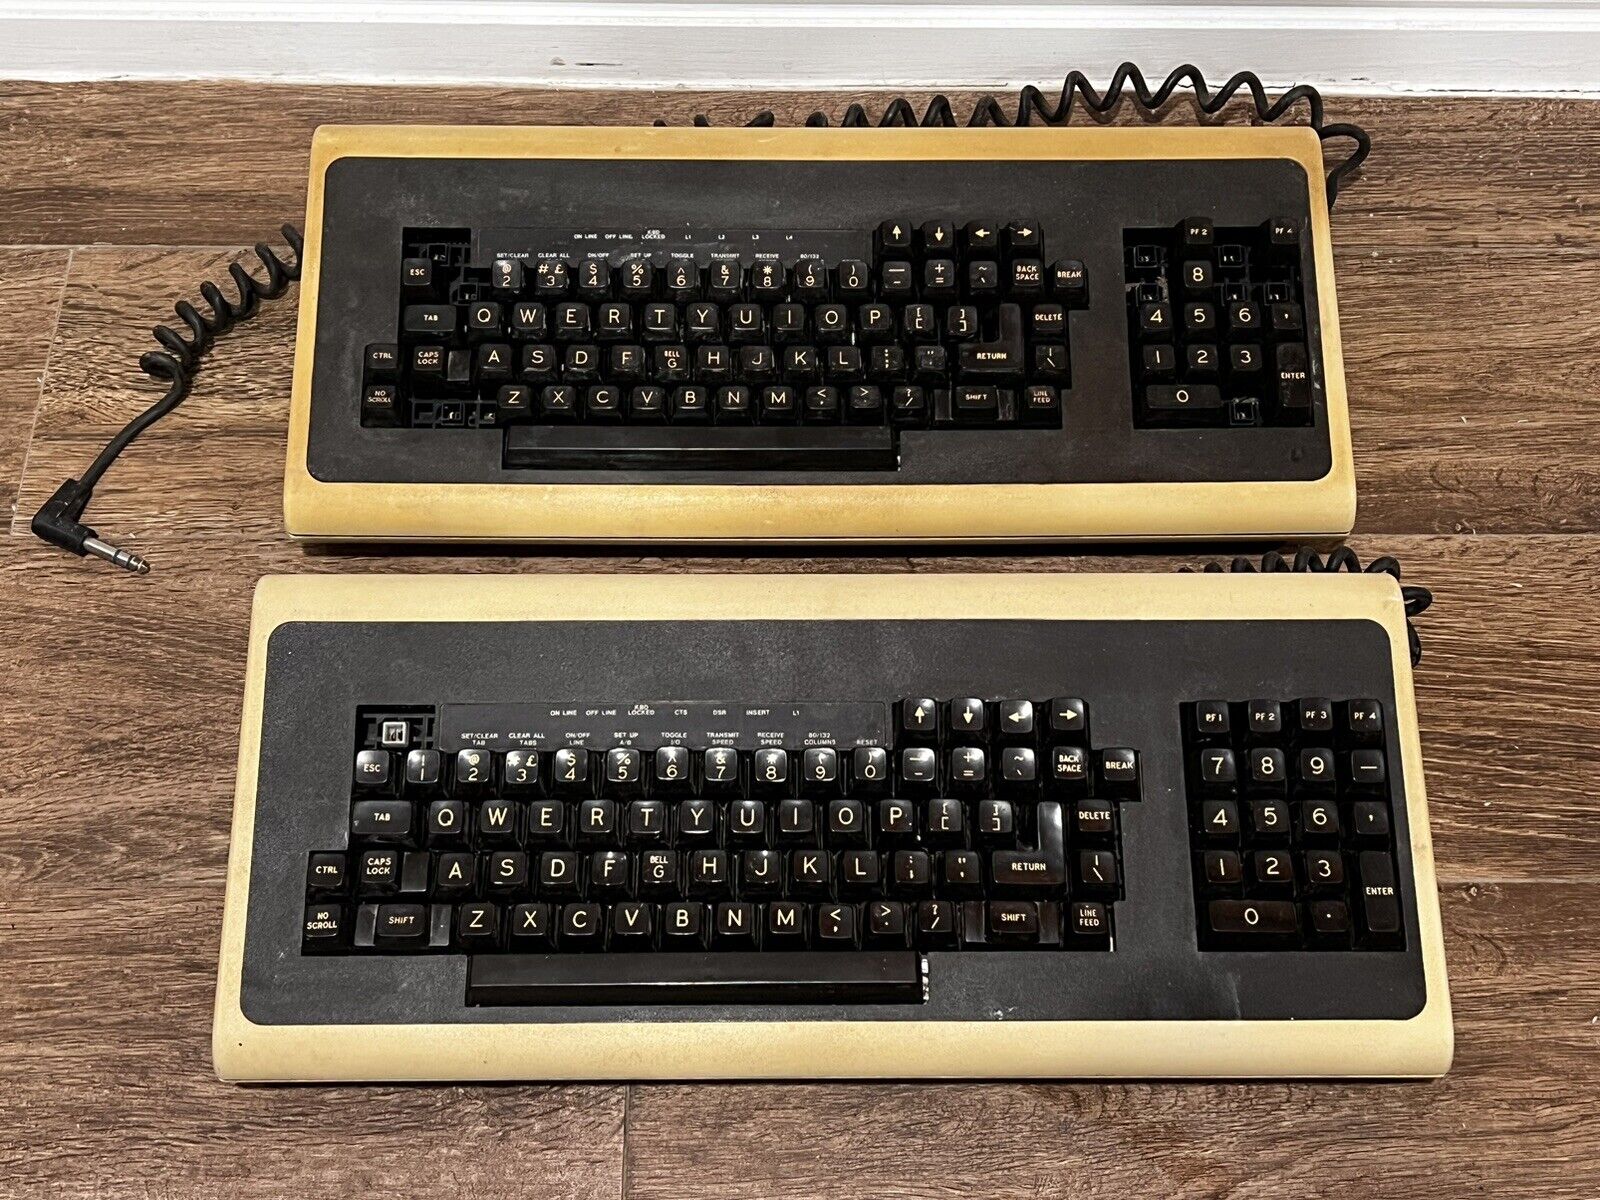 Lot of 2 Vintage DEC Digital Computer Mainframe VT100 Keyboards Untested